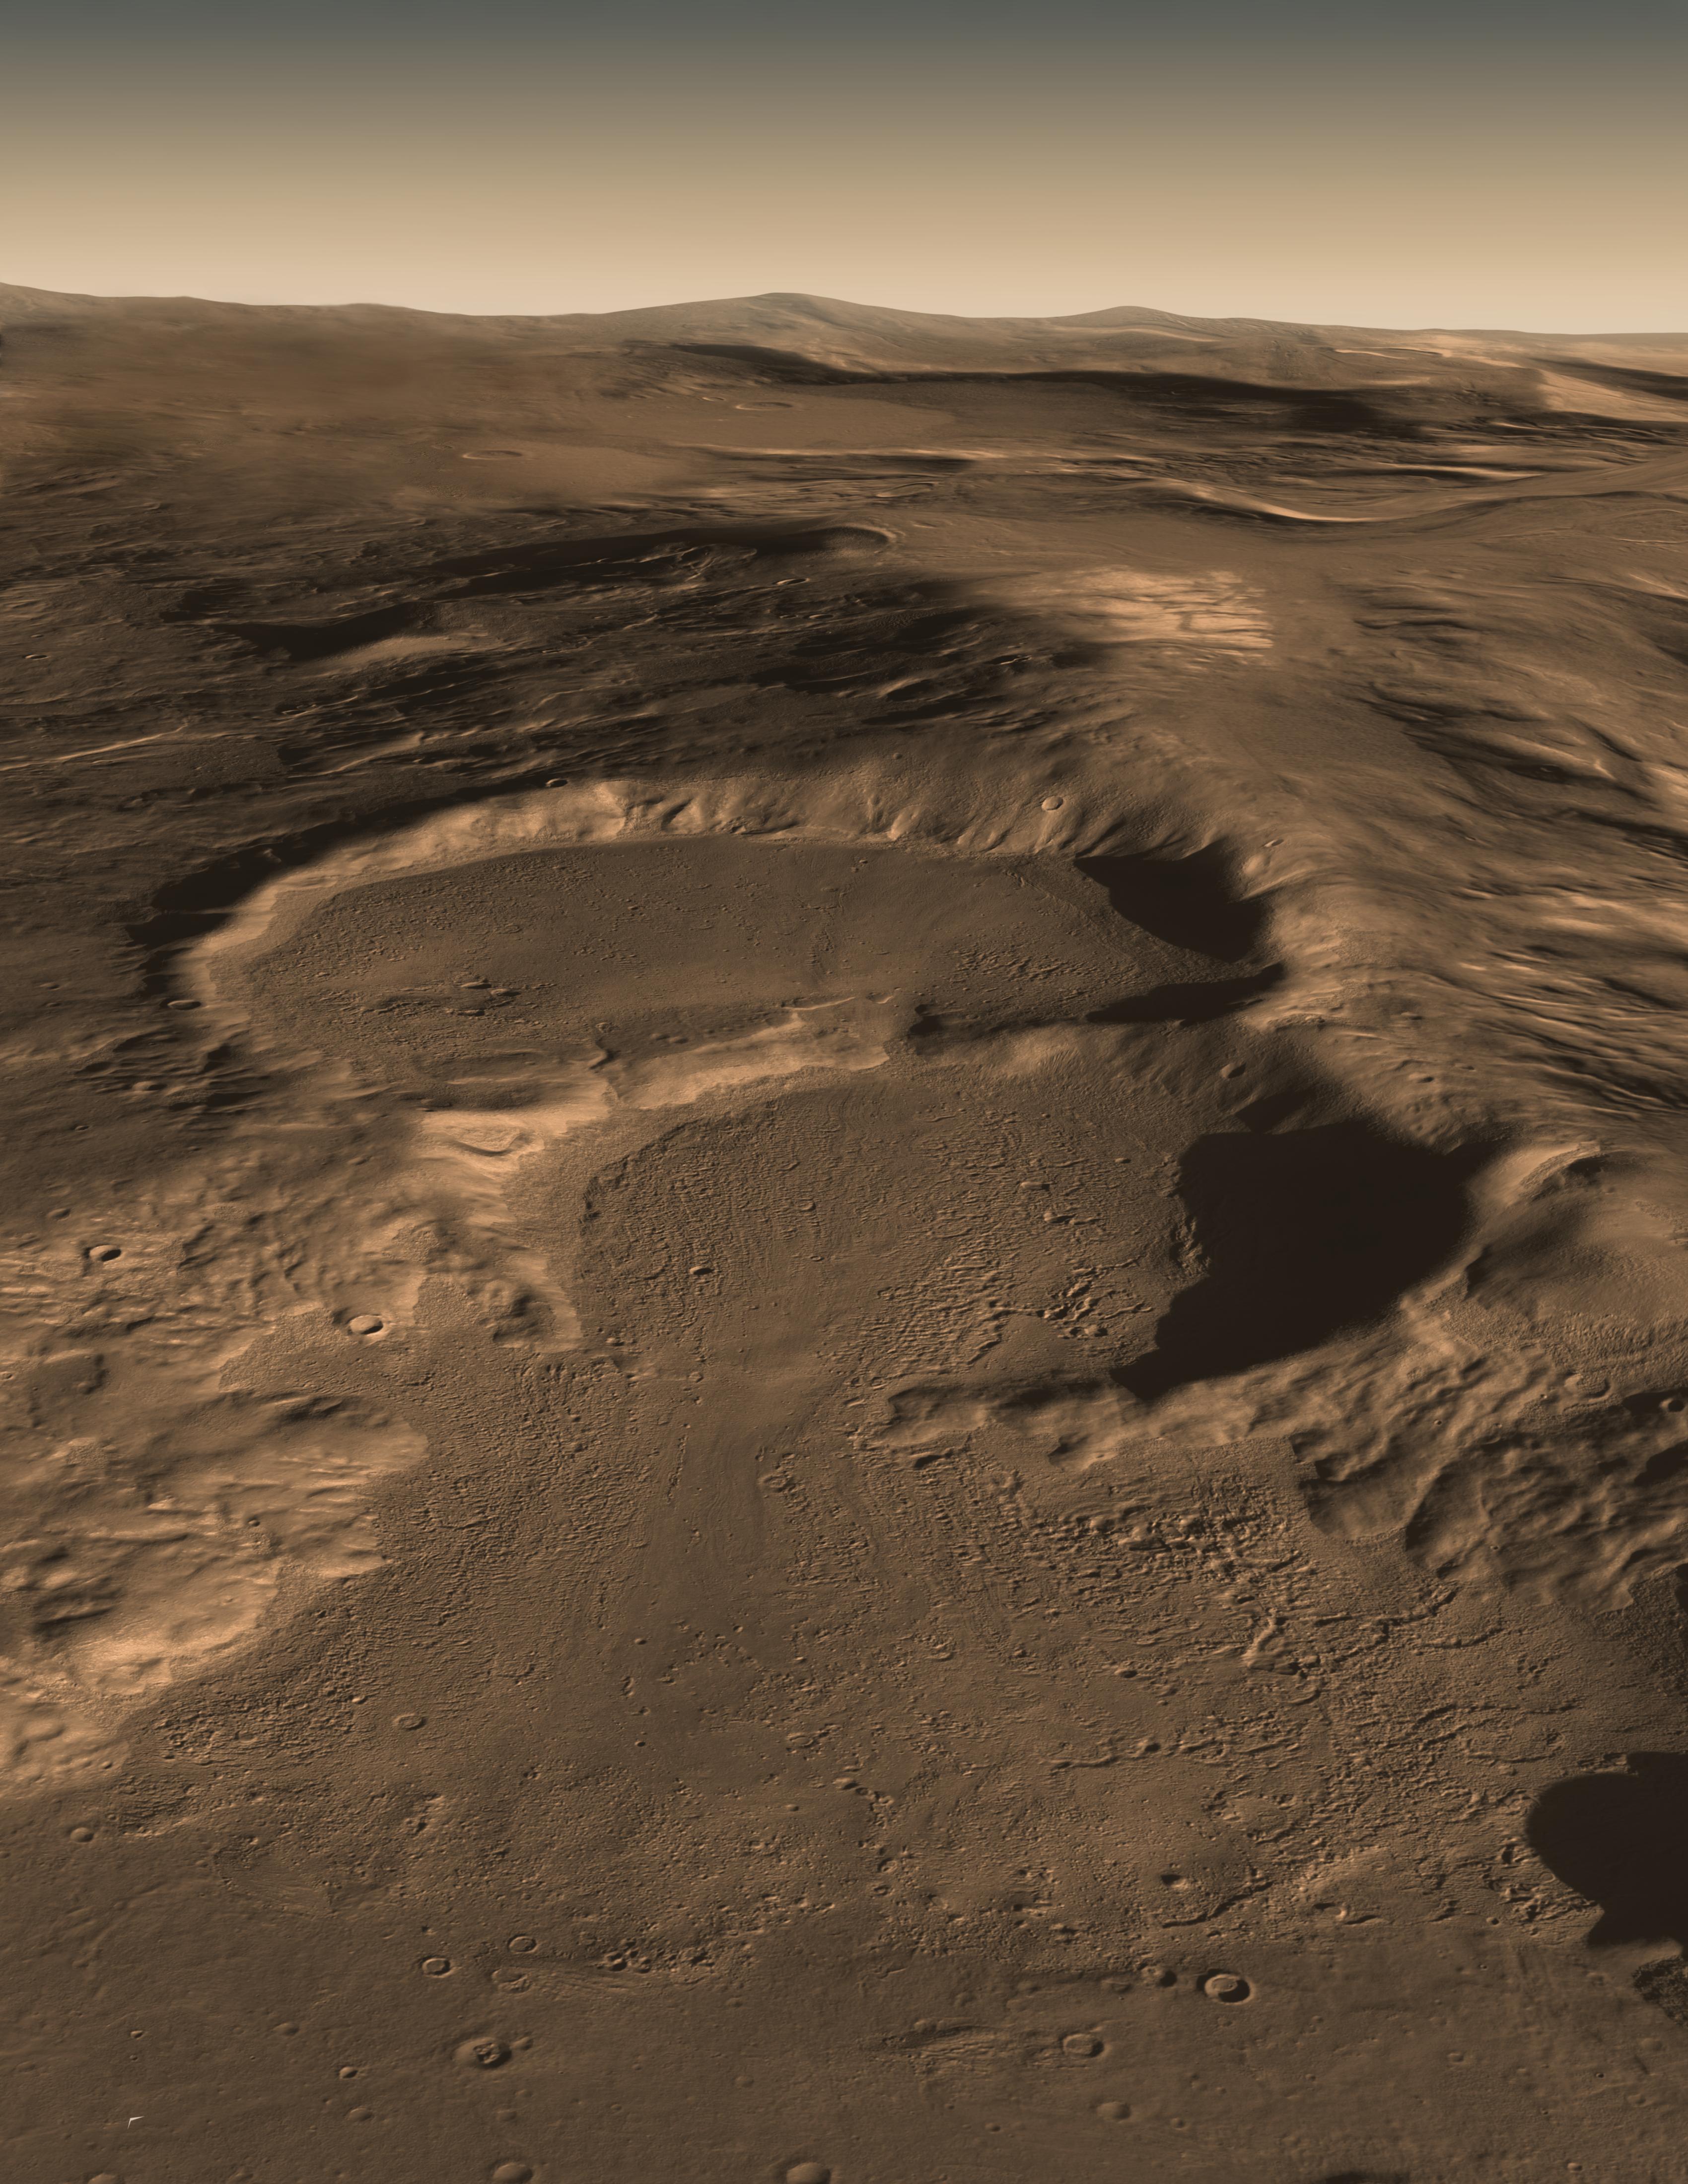 Radar otkryvaet skryvayushiesya ledniki na Marse